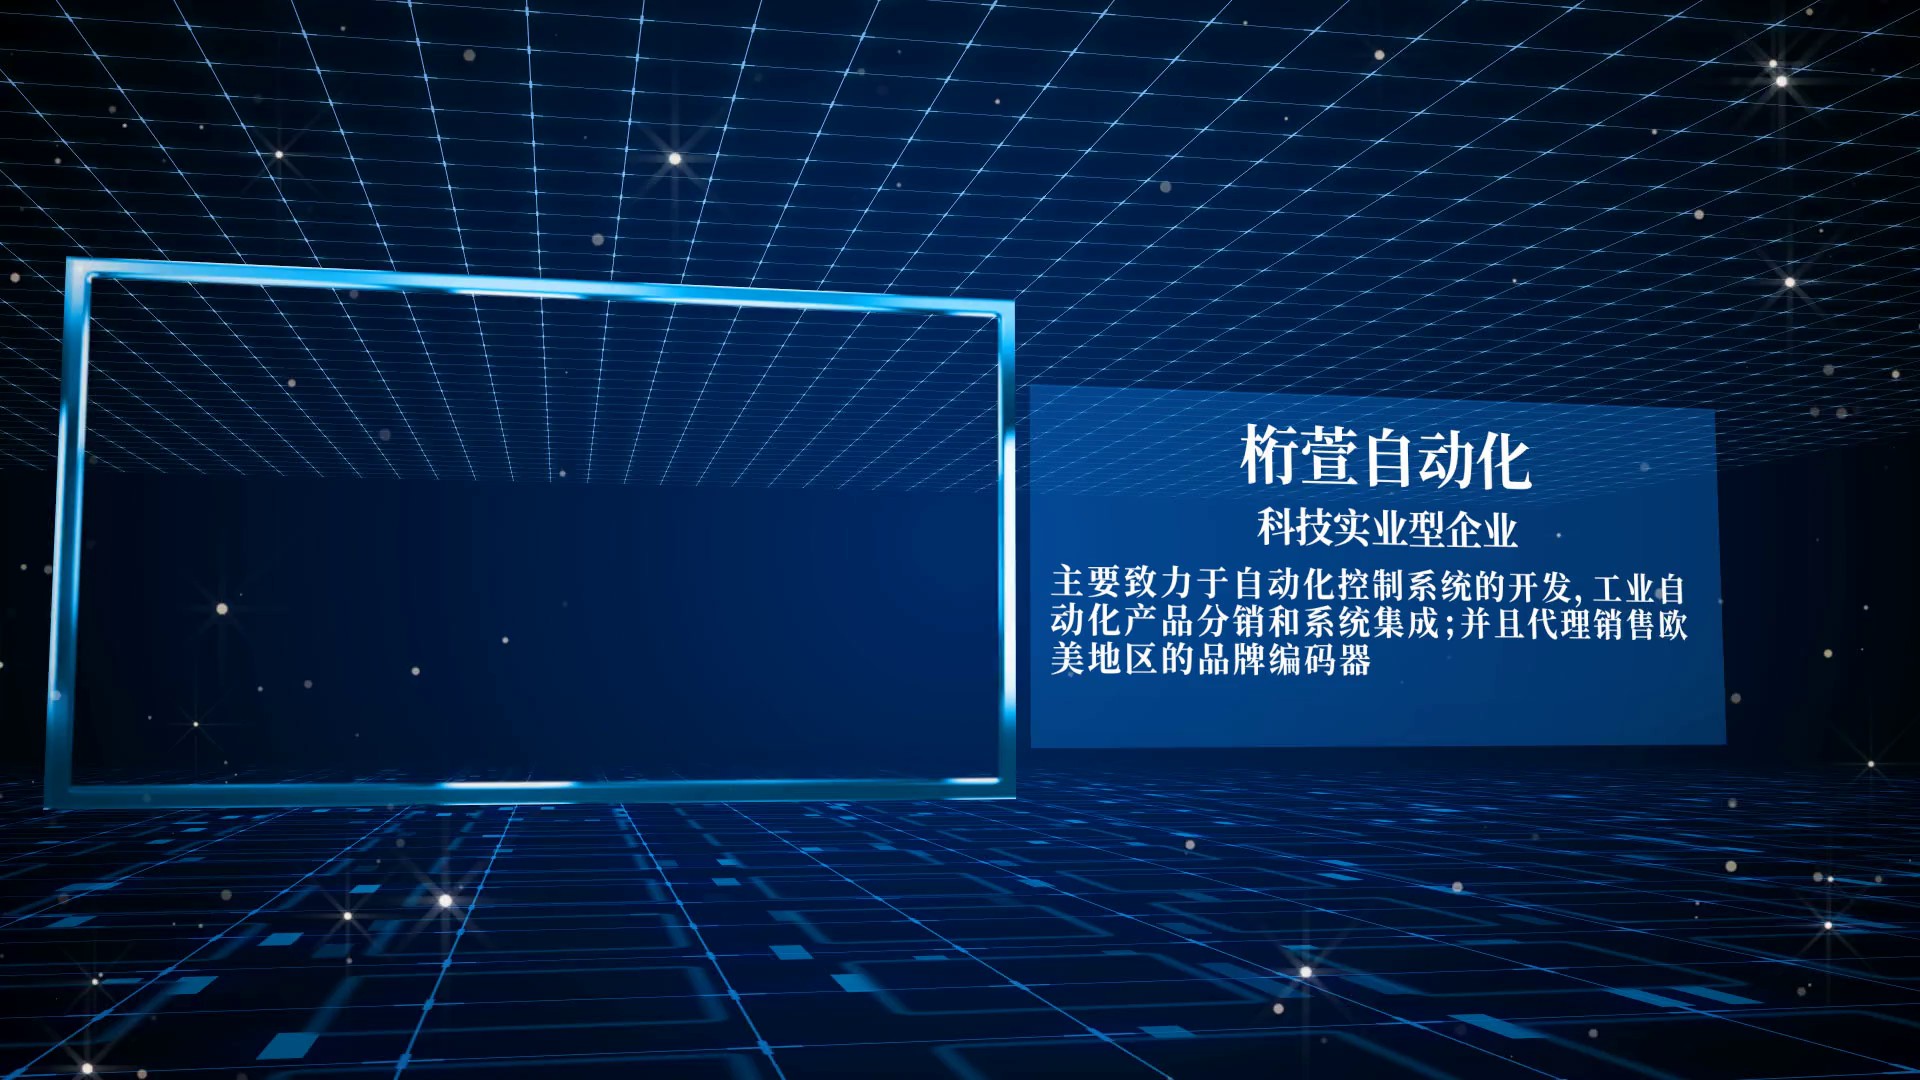 上海单圈0-10光电绝对值编码器供应商,光电单圈编码器